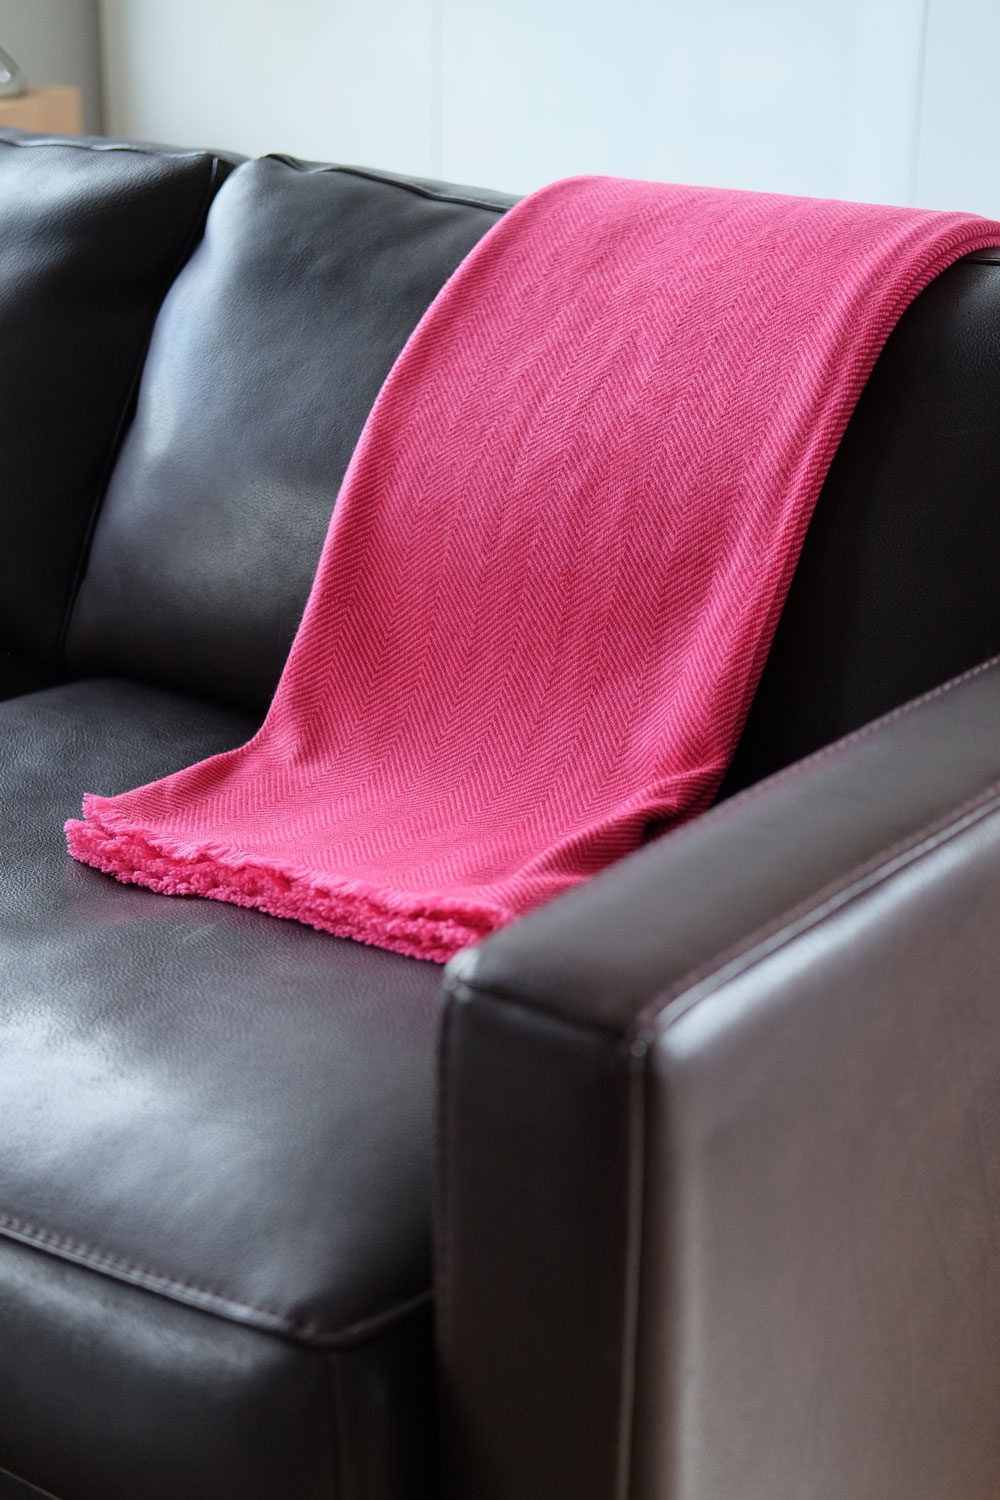 Cashmere accessori erable 130 x 190 rosa shocking rosso rubino 130 x 190 cm